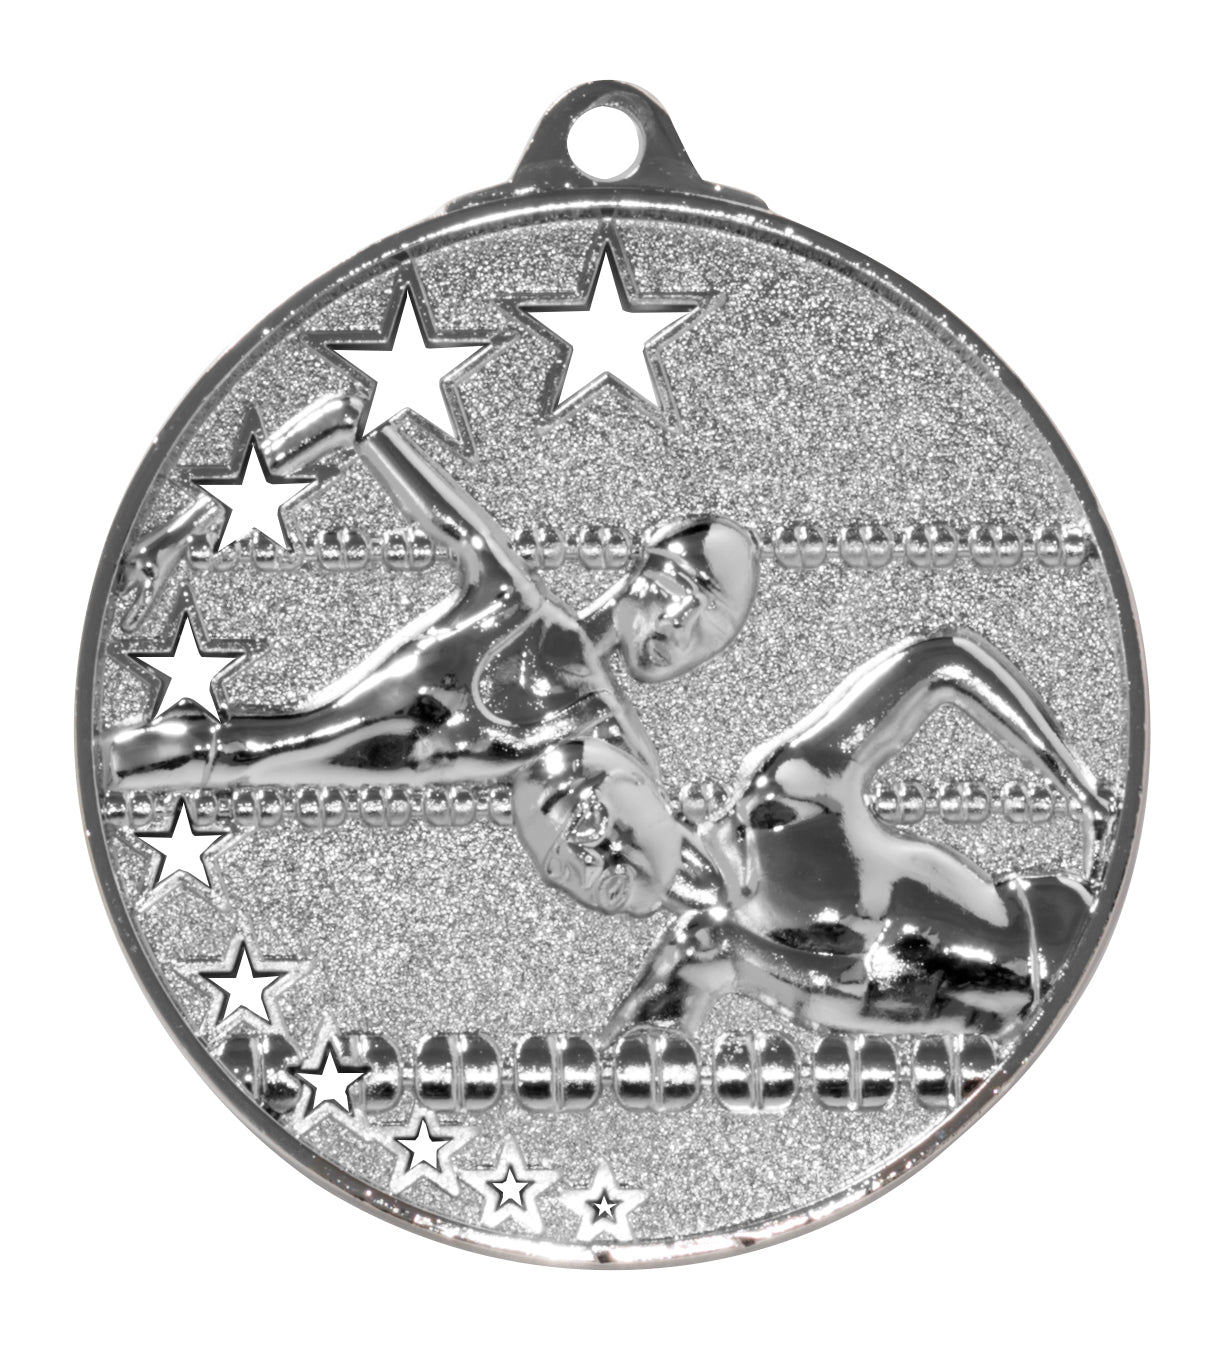 Die Schwimmen Medaillen Halle 52 mm PK79224 zeigen zwei Schwimmer und Sterne, sind aus hochwertigem Material gefertigt und stellen ein exklusives Design unter den Medaillen dar.